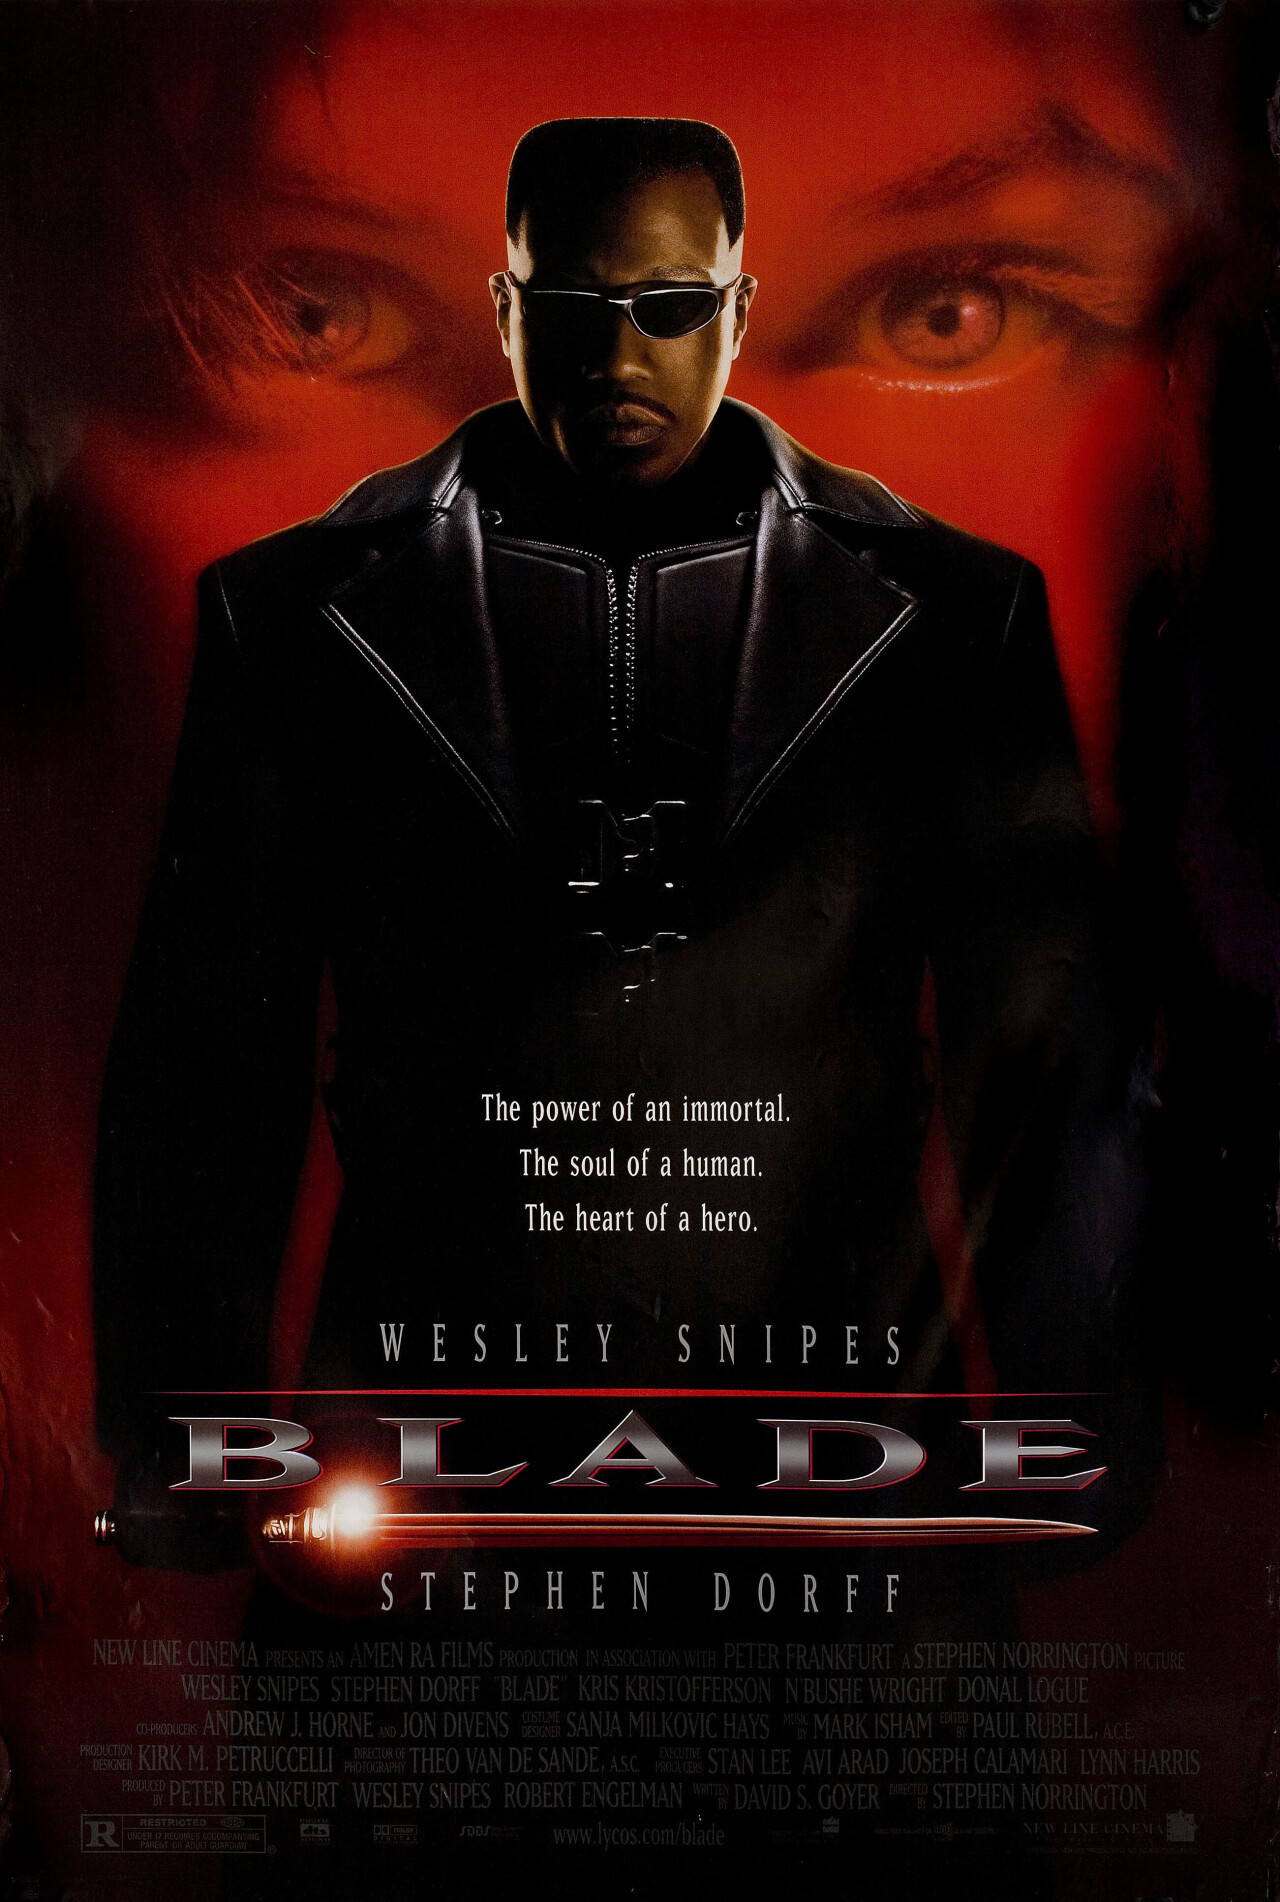 Блэйд (Blade, 1998), режиссёр Стивен Норрингтон, американский постер к фильму (ужасы, 1998 год)